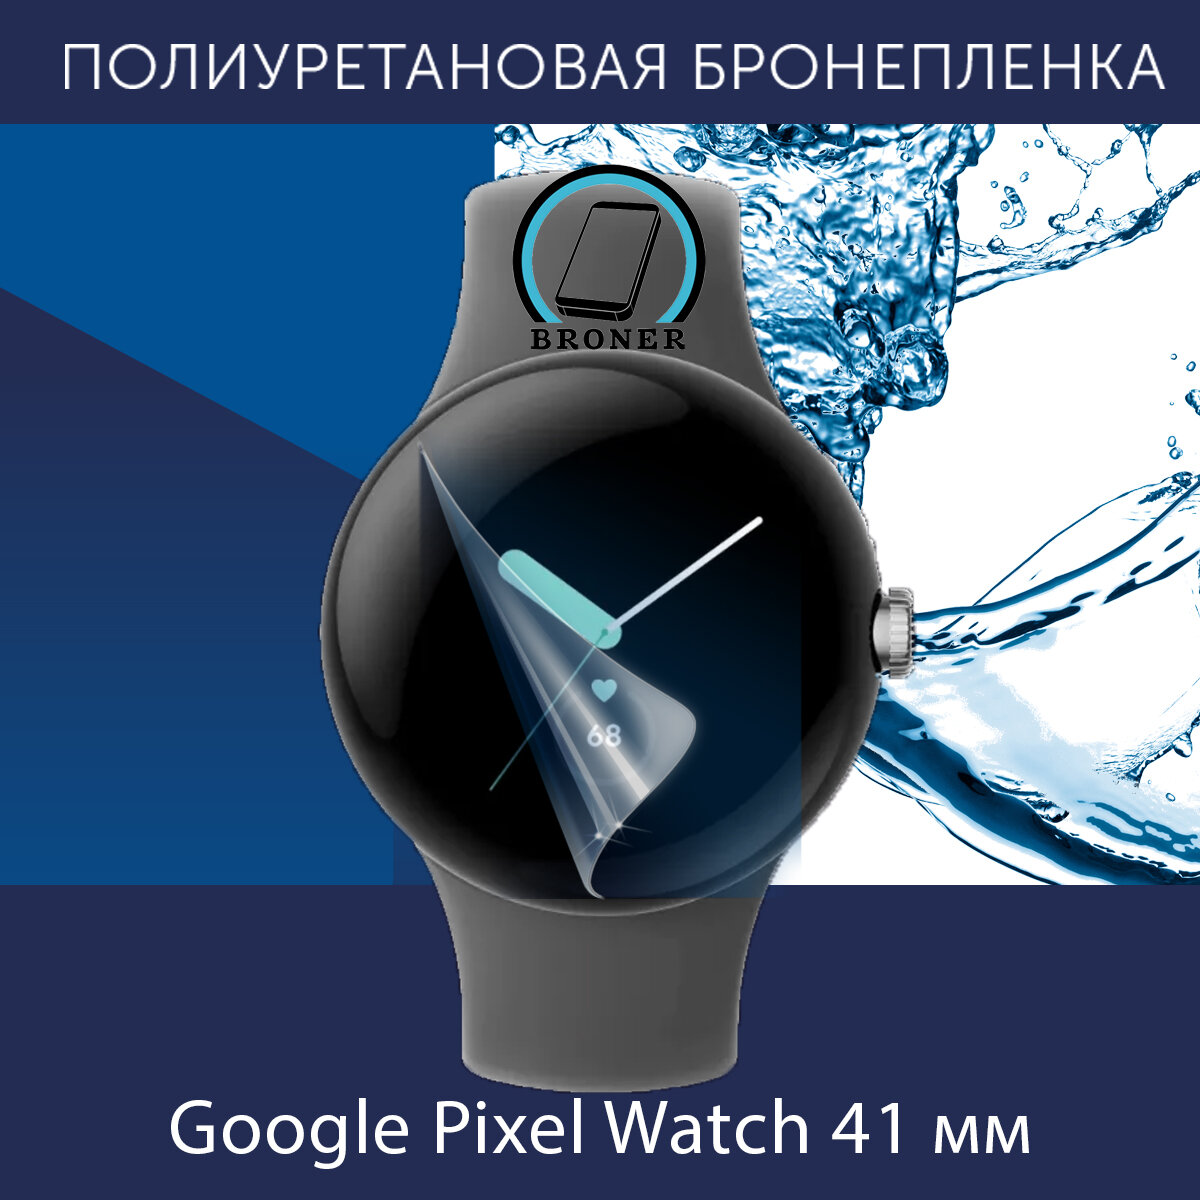 Полиуретановая бронепленка для смарт-часов Google Pixel Watch 41mm / Защитная пленка на гугл пиксель вотч 41мм / Глянцевая